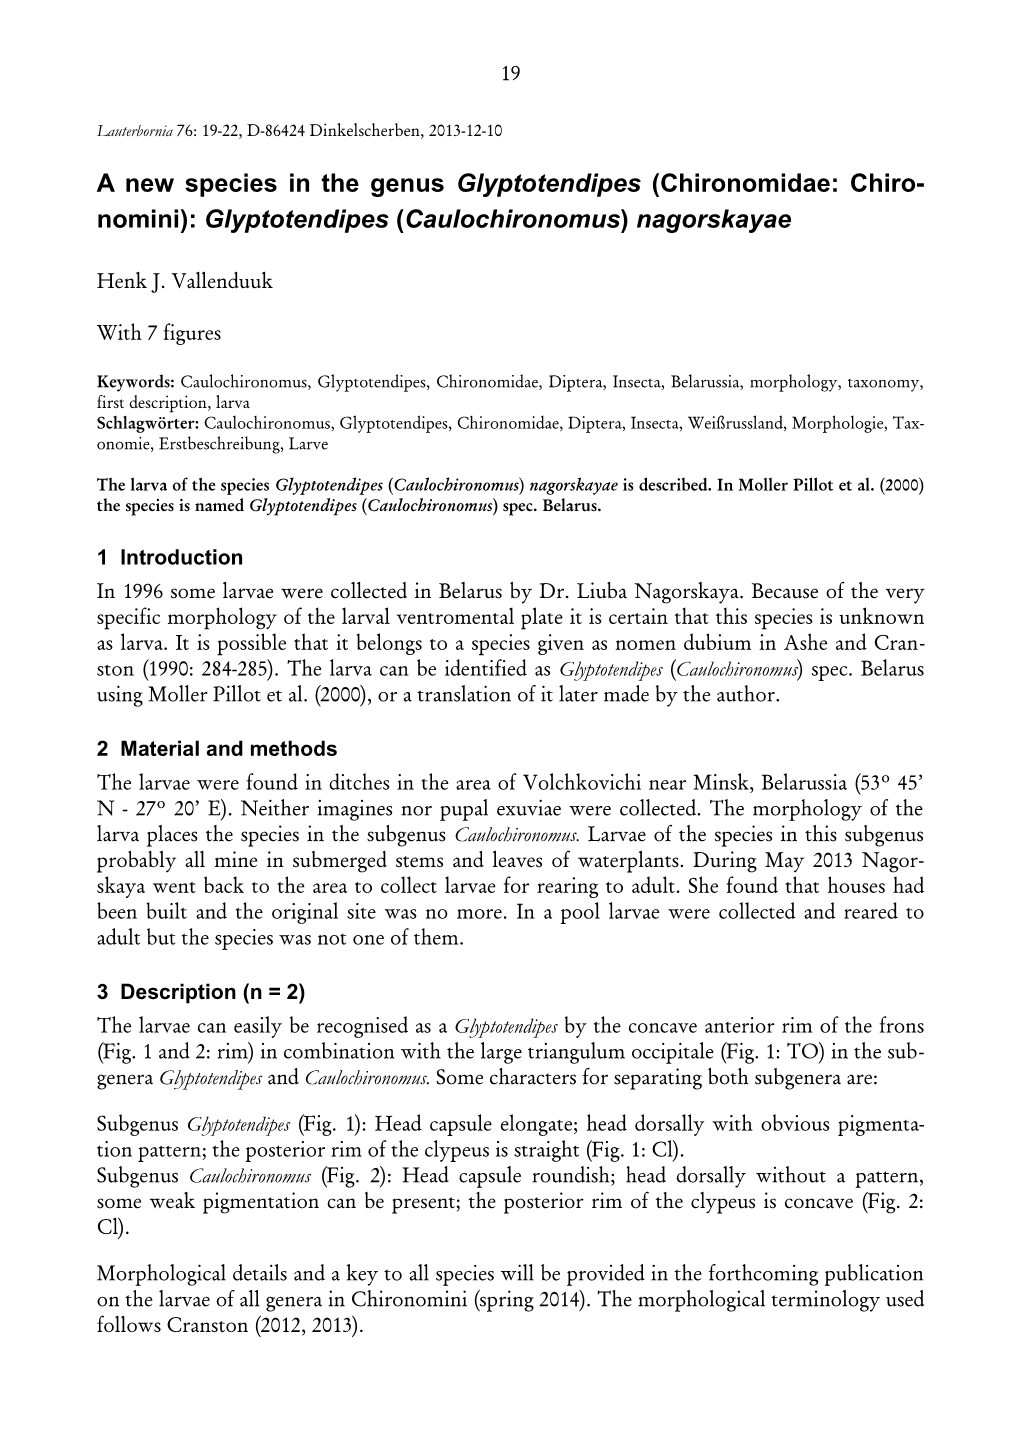 Glyptotendipes (Caulochironomus) Nagorskayae